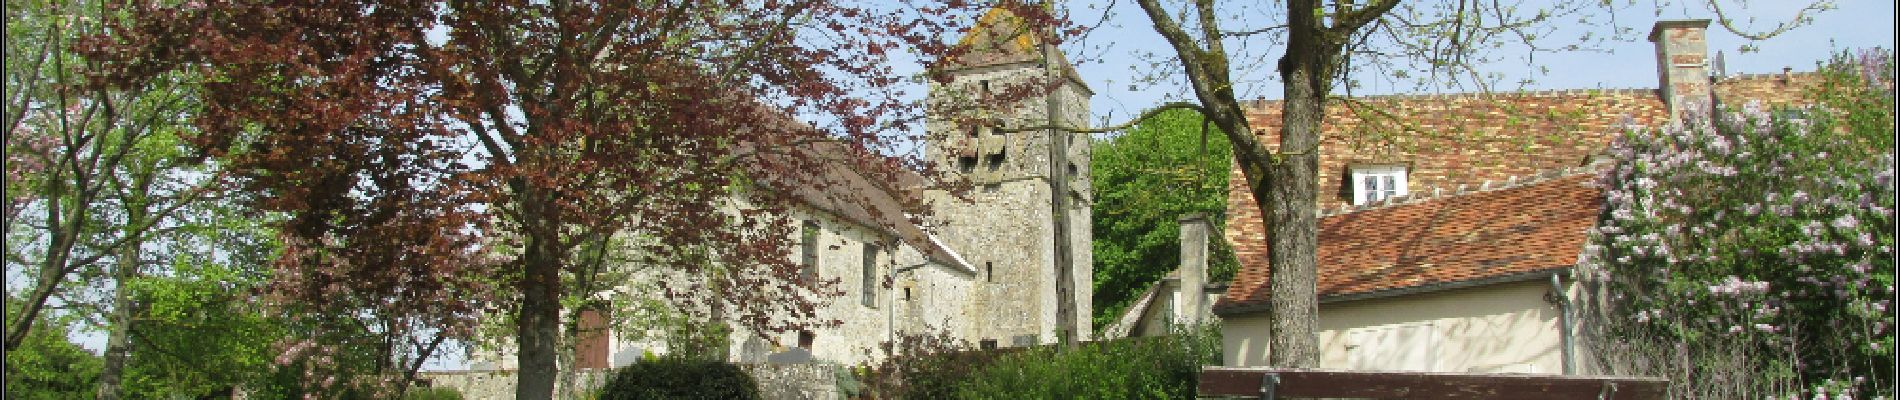 Point of interest Villeneuve-sur-Verberie - pause 4h photo église - Photo